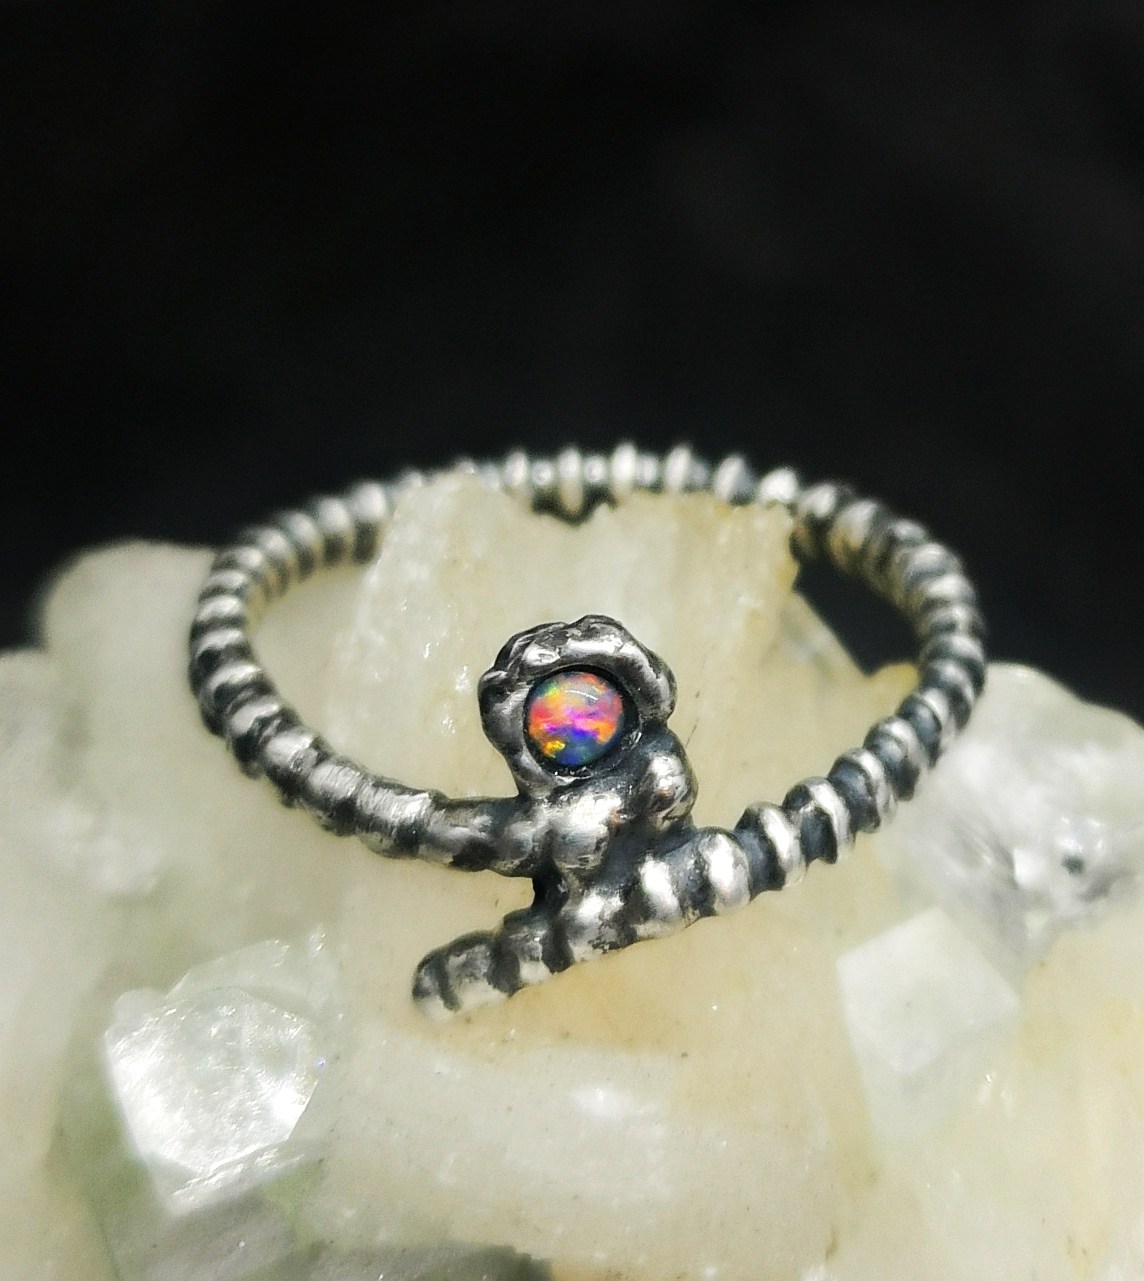 Gerillter Silber-Ring mit gebogenen Enden.  Im Ringkopf sitzt ein bunt schillernder Opal.